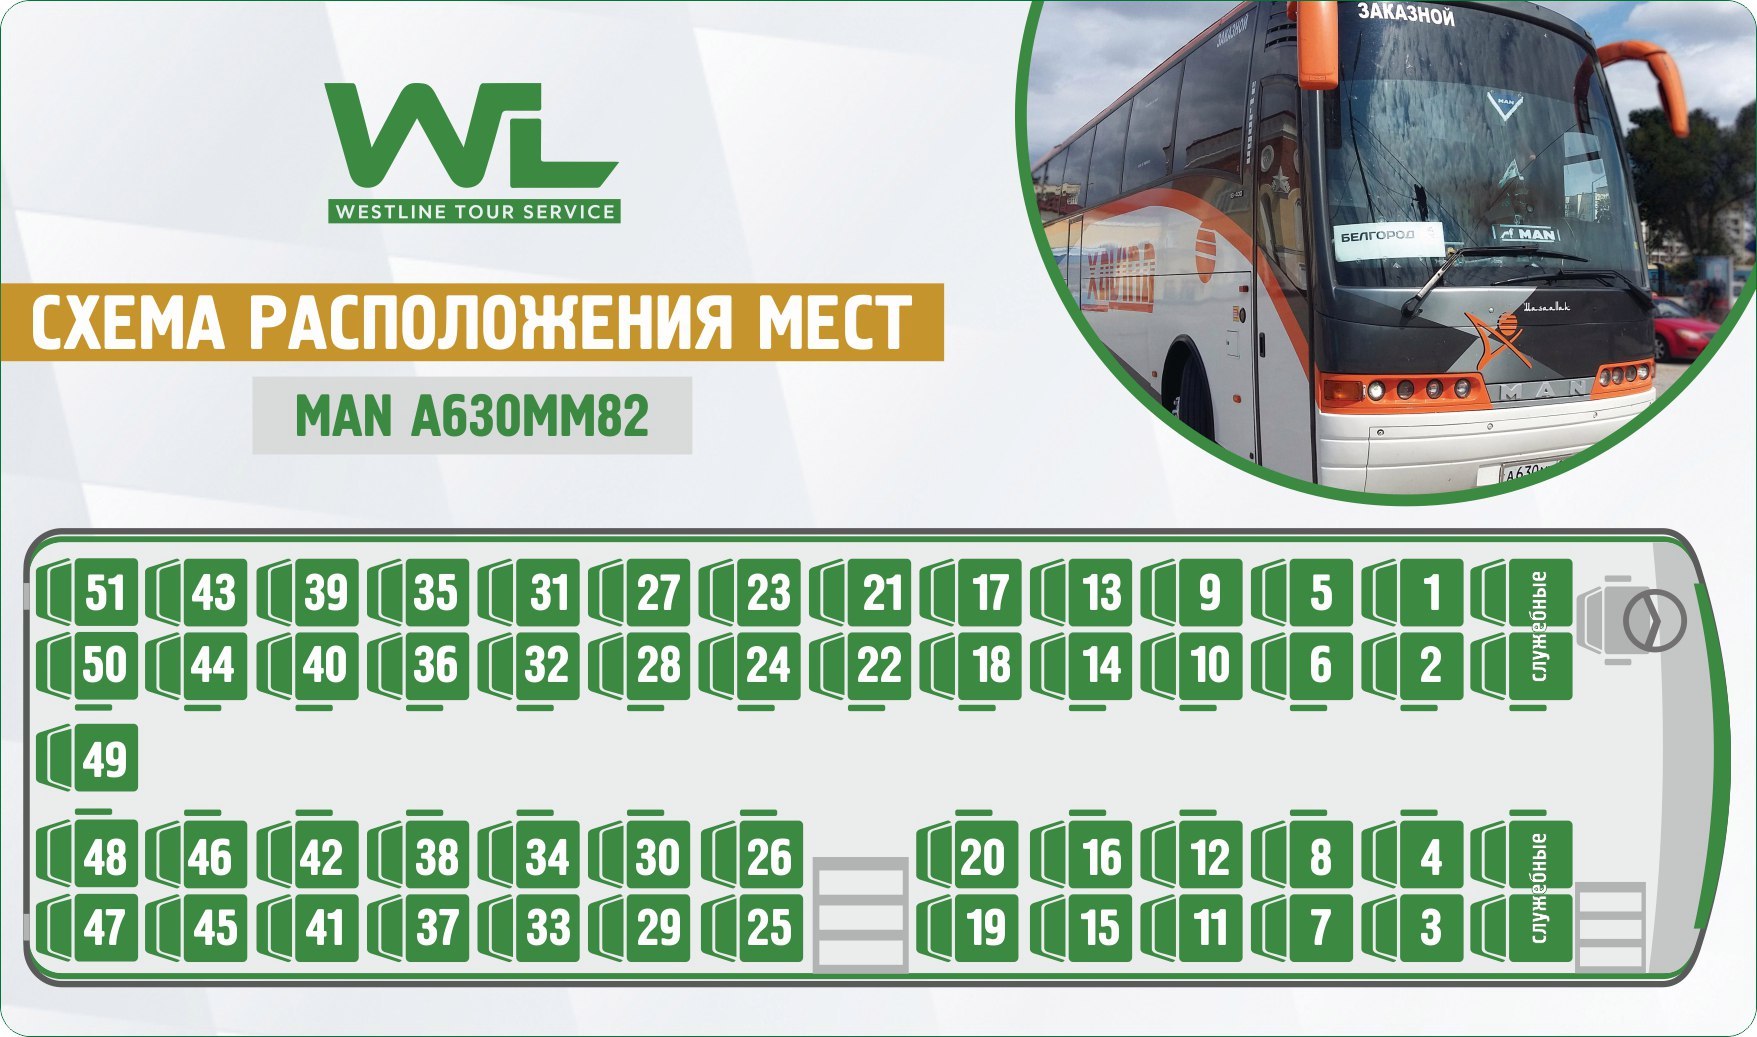 Междугородные номера. Нумерация мест в автобусе сетра. Неоплан 49 автобус расположение мест. Neoplan Neoplan (49 мест). Автобус ман 49 мест схема салона.